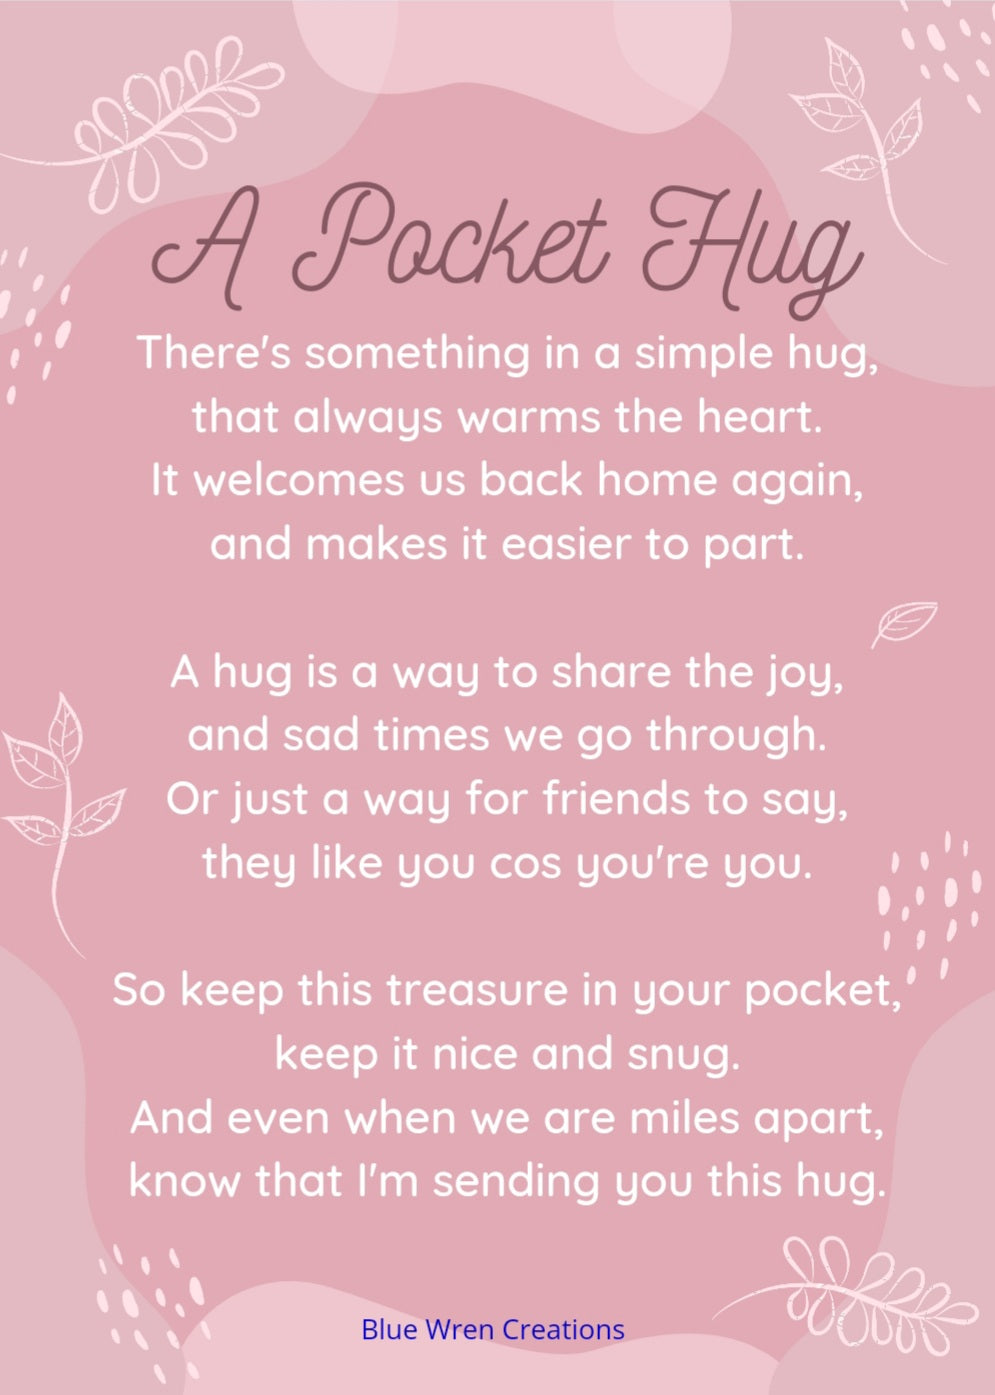 Pocket hug - pinks